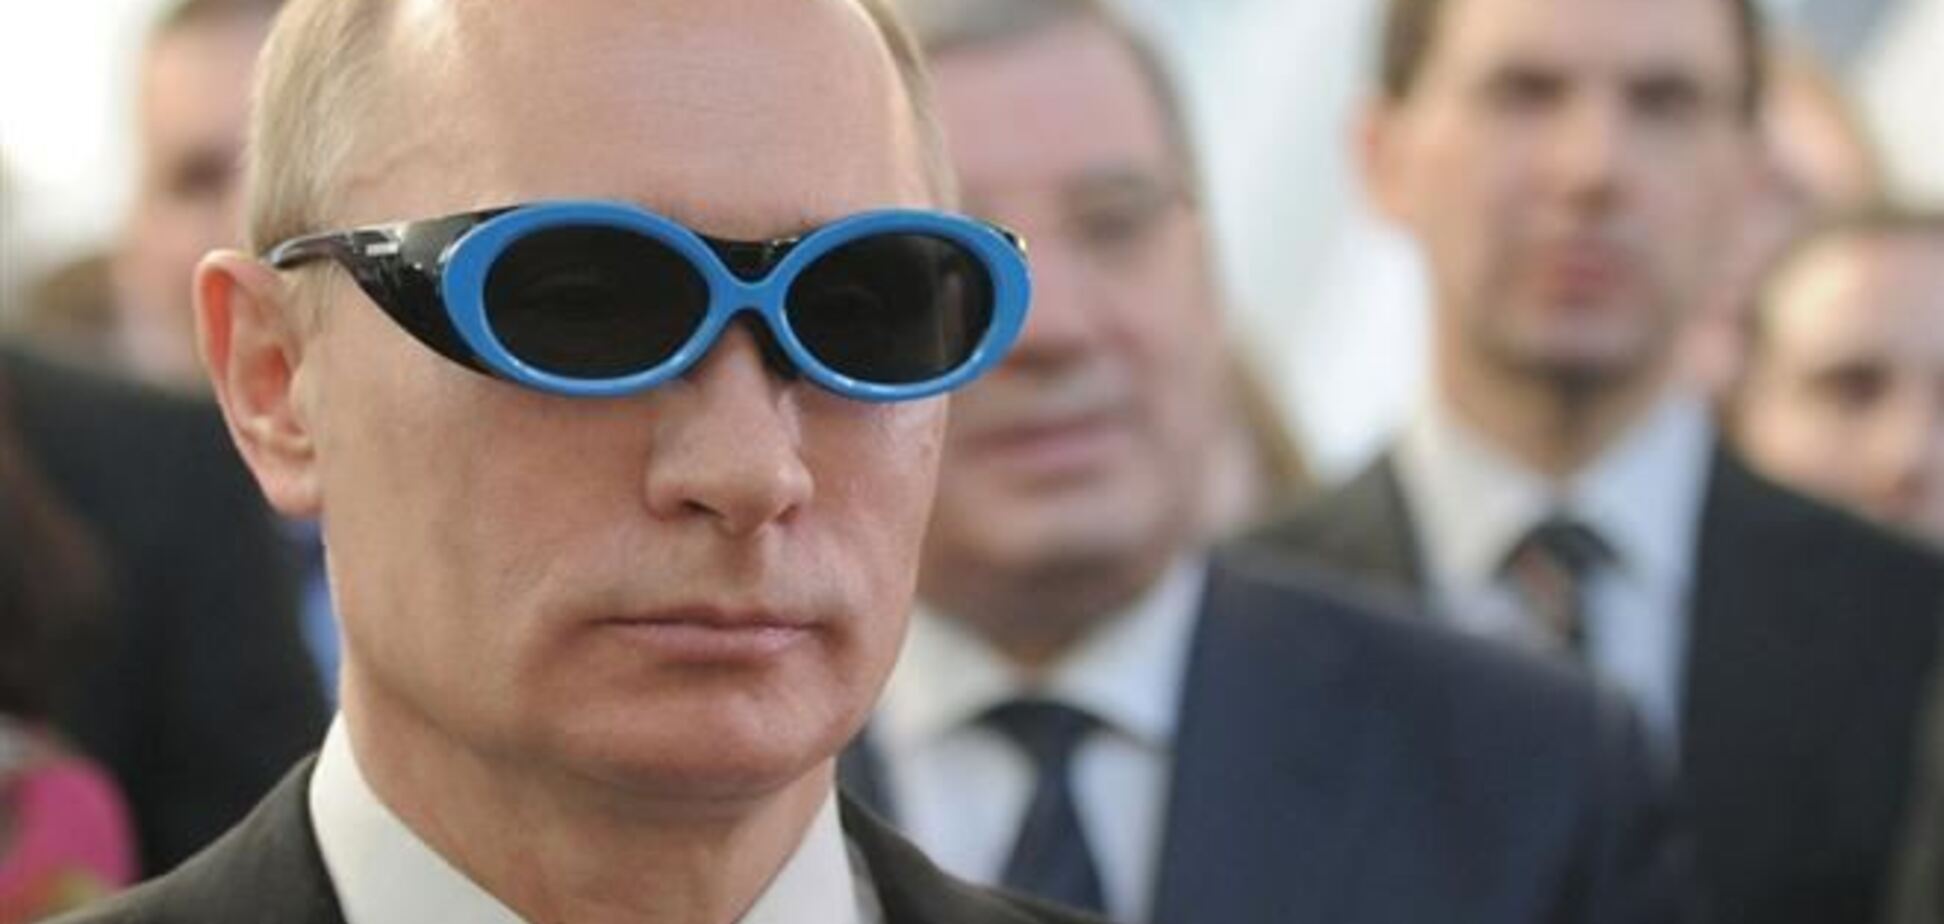 Журнал The Economist высмеял Путина и его 'новый мировой порядок'